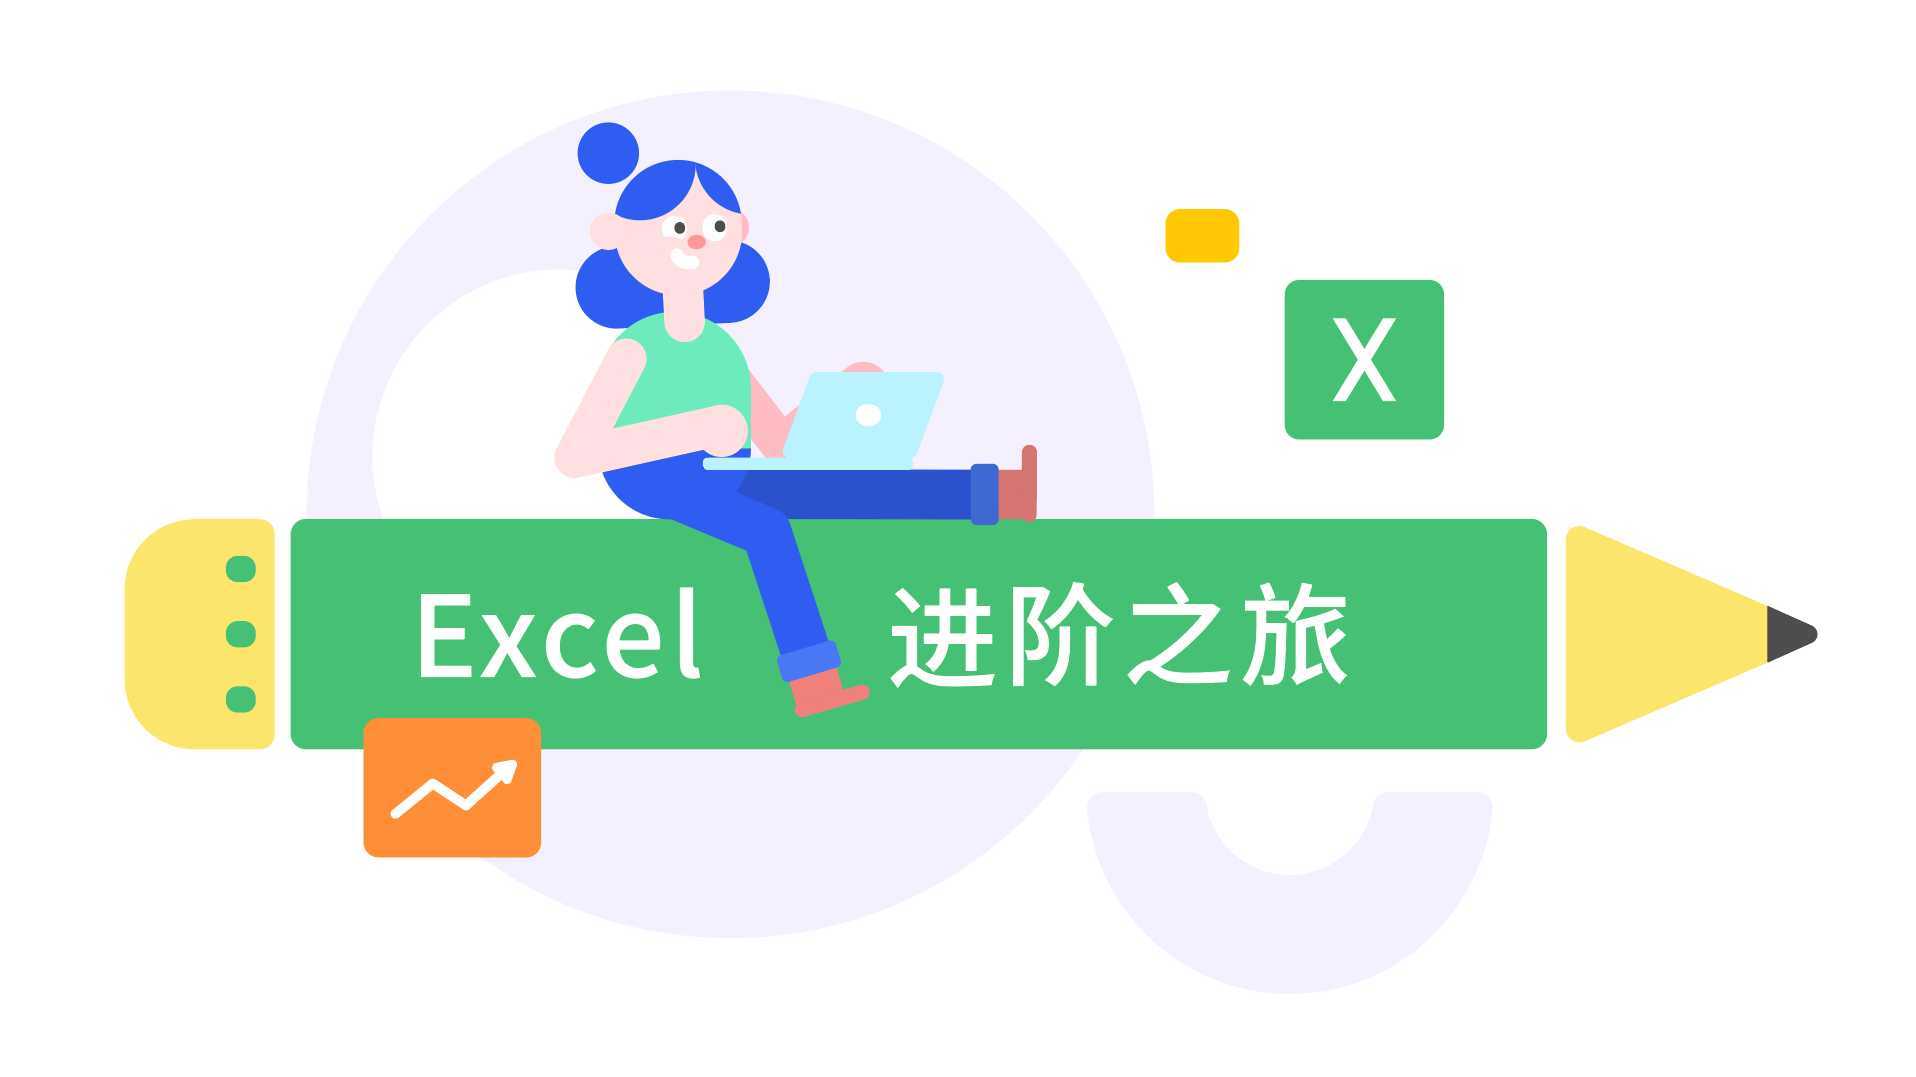 灵动教育MG动画丨百词斩-开启Excel进阶之旅